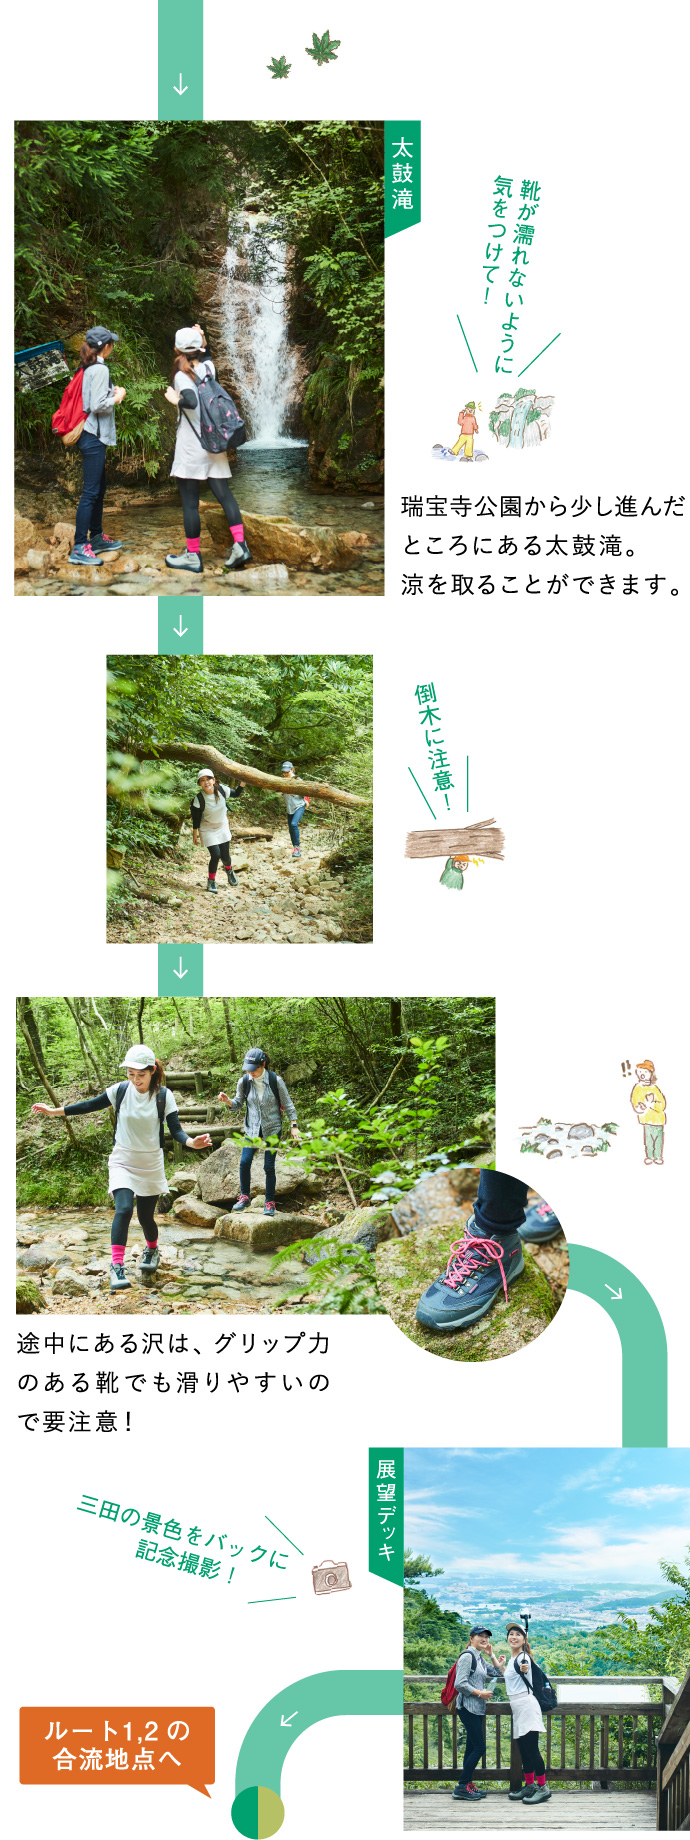 ルート1 瑞宝寺公園〜六甲山最高峰